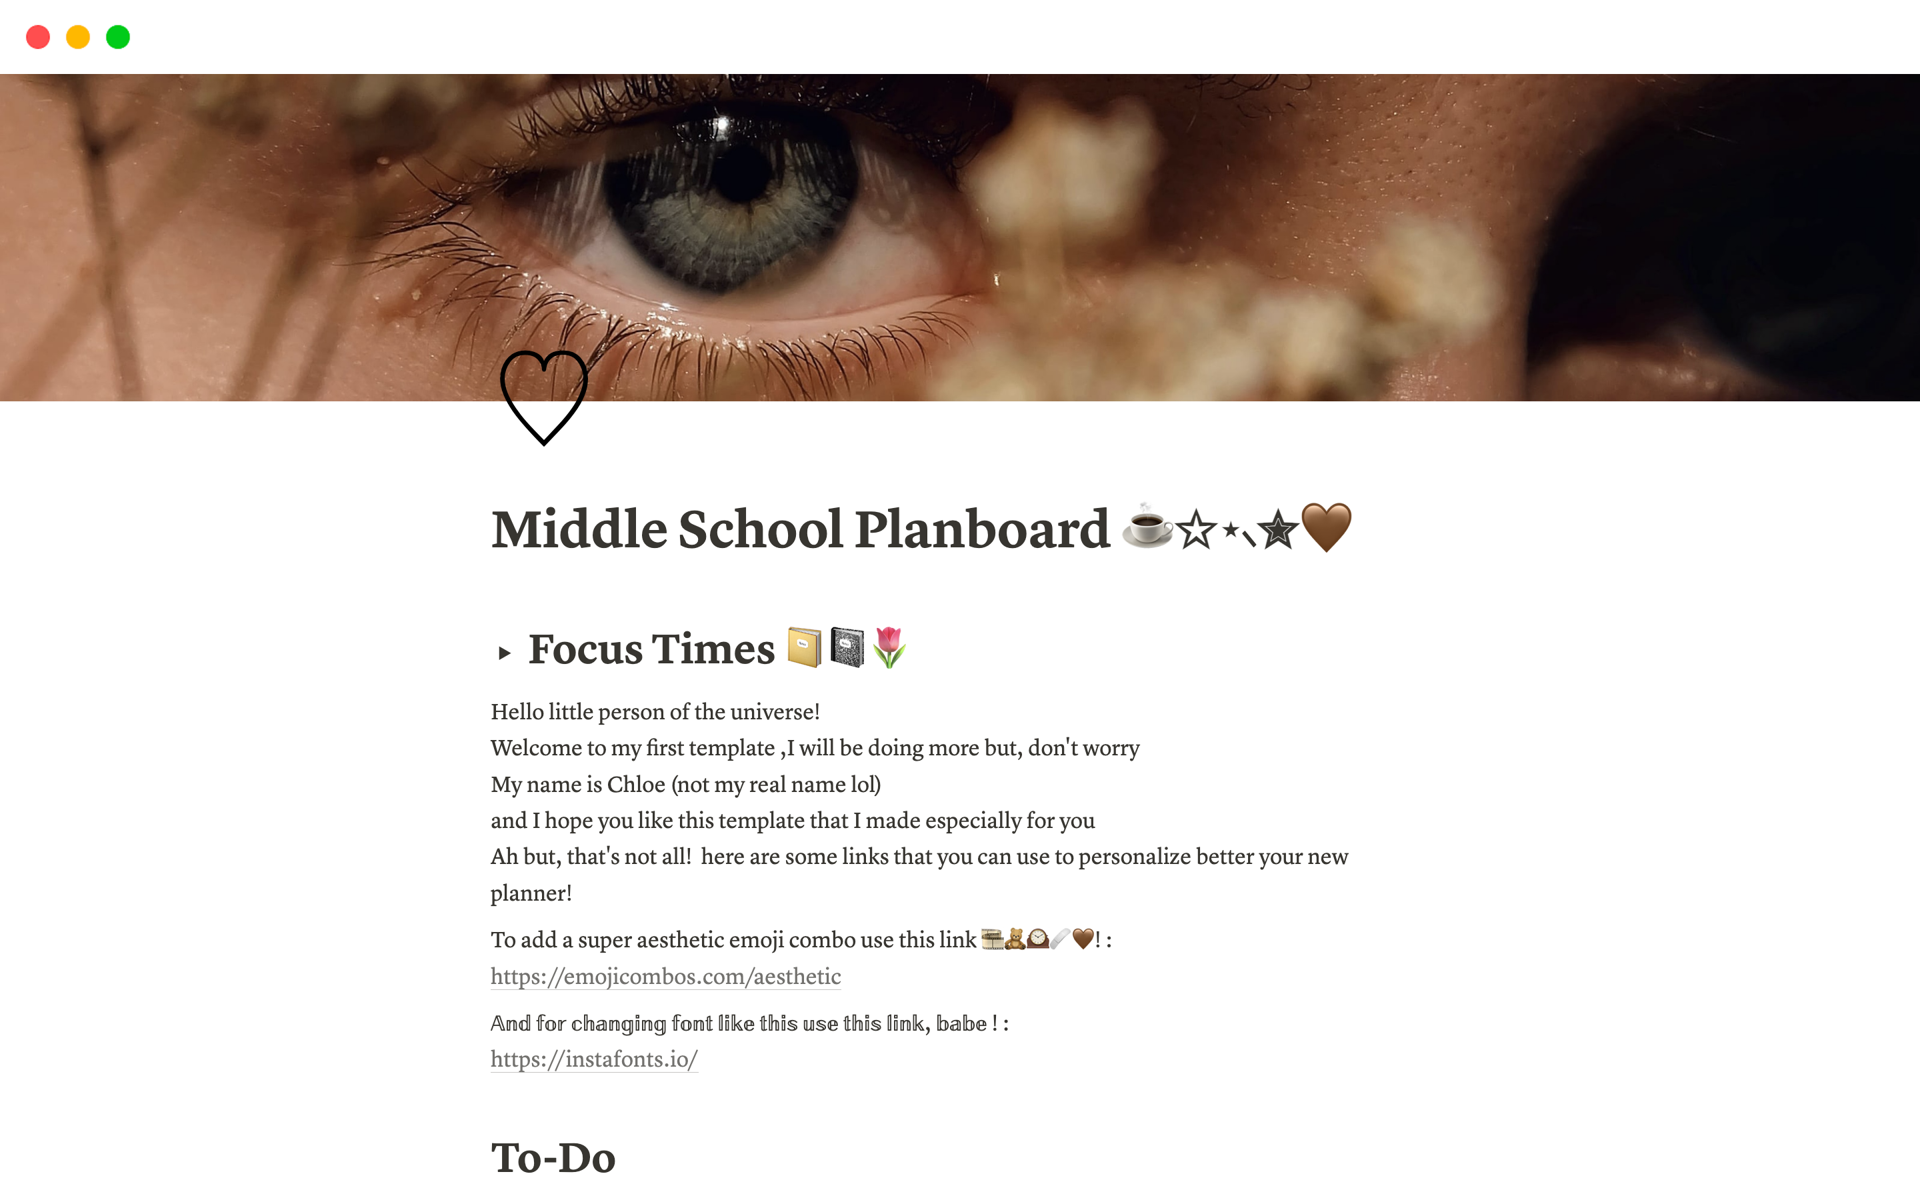 Vista previa de una plantilla para Middle School Planboard